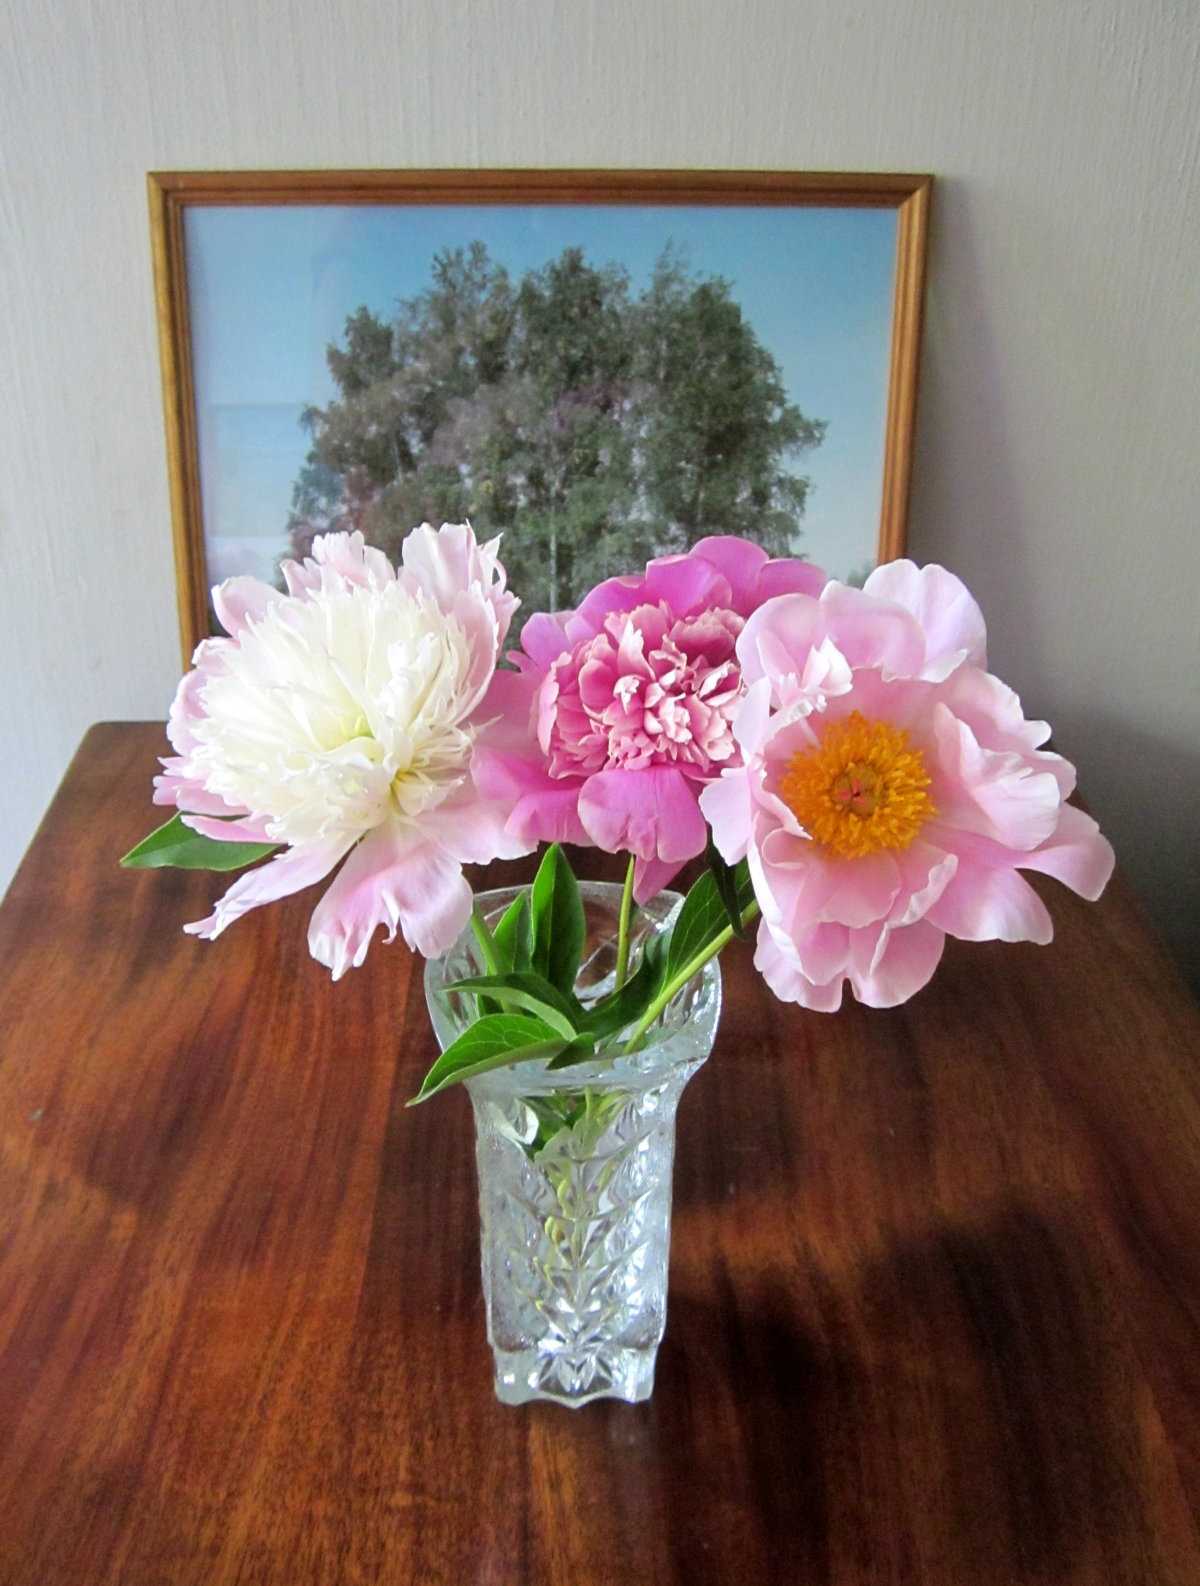 О пионах в вазе: как сохранить срезанные цветы и почему они меняют цвет